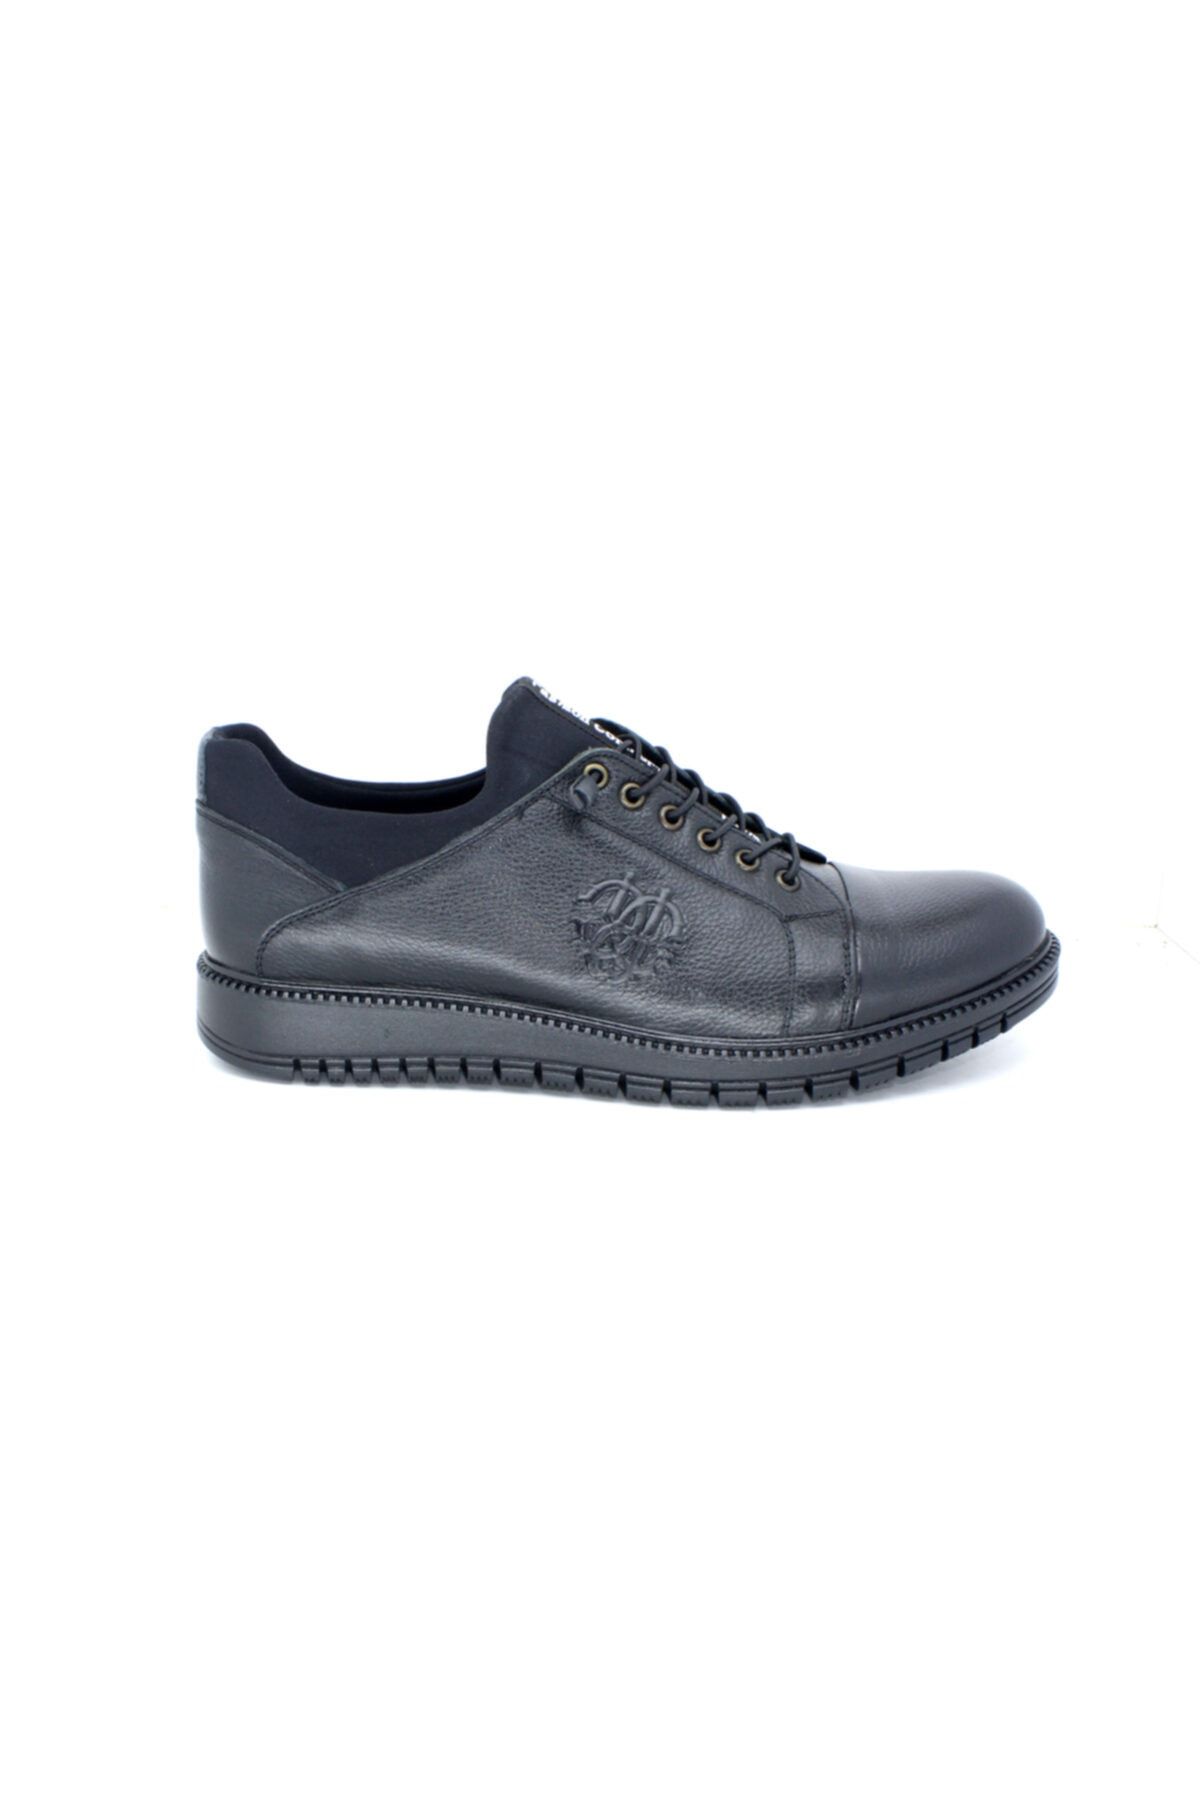 TRENDYSHOES Trendyshose 81176 Hakiki Deri Kaymaz Taban Termal Astar Erkek Günlük Ayakkabı